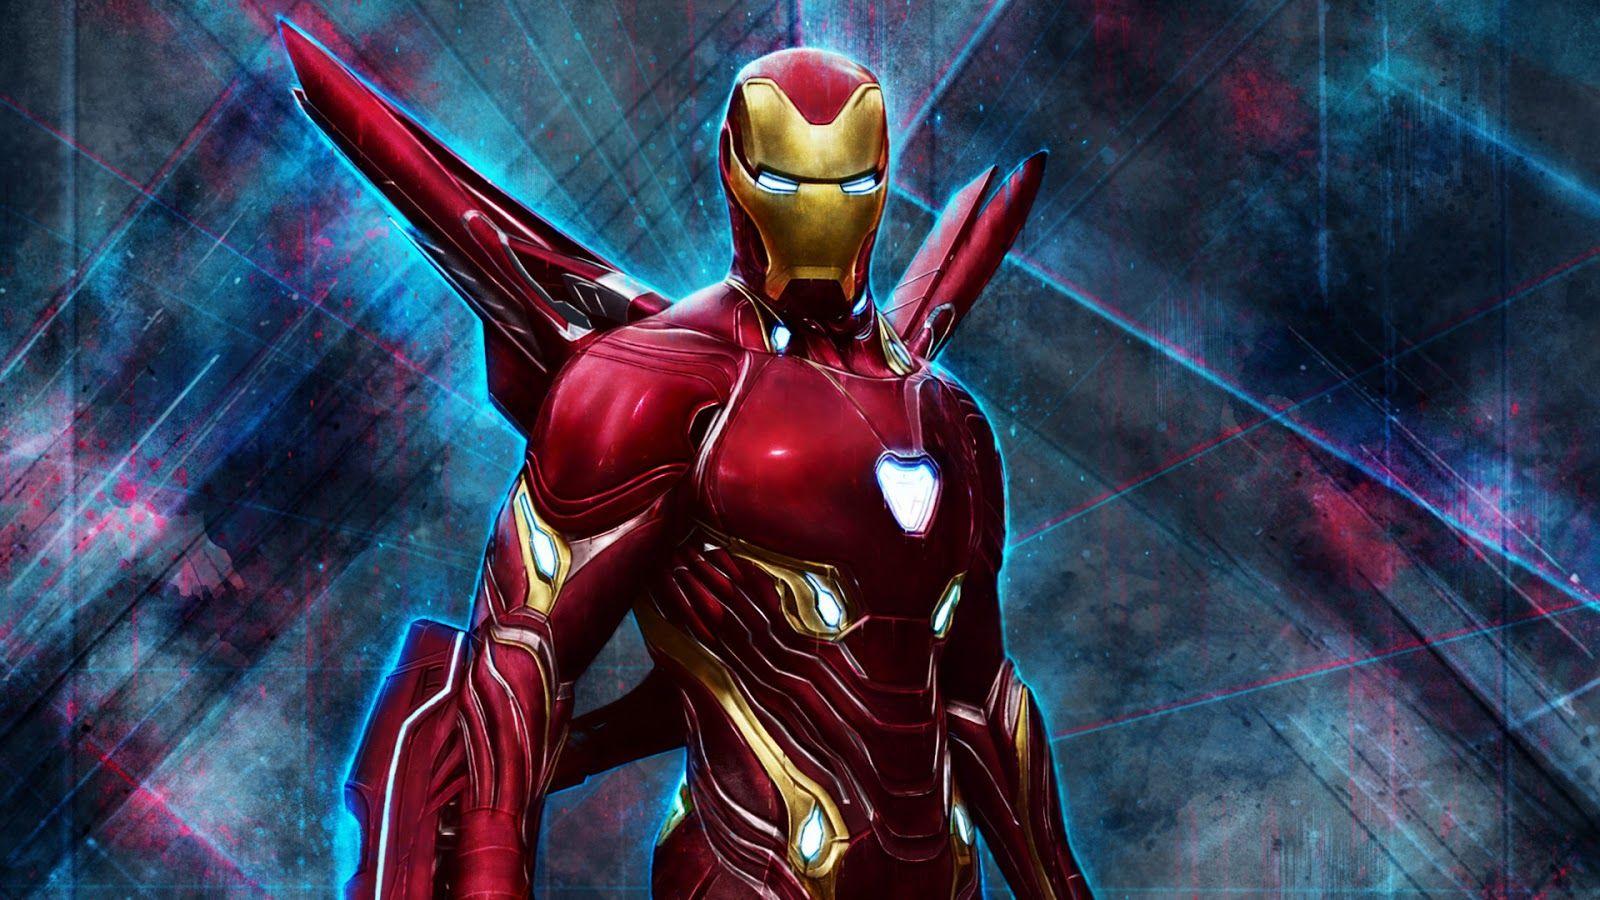 EA giới thiệu game Iron Man đang trong giai đoạn phát triển - Fptshop.com.vn